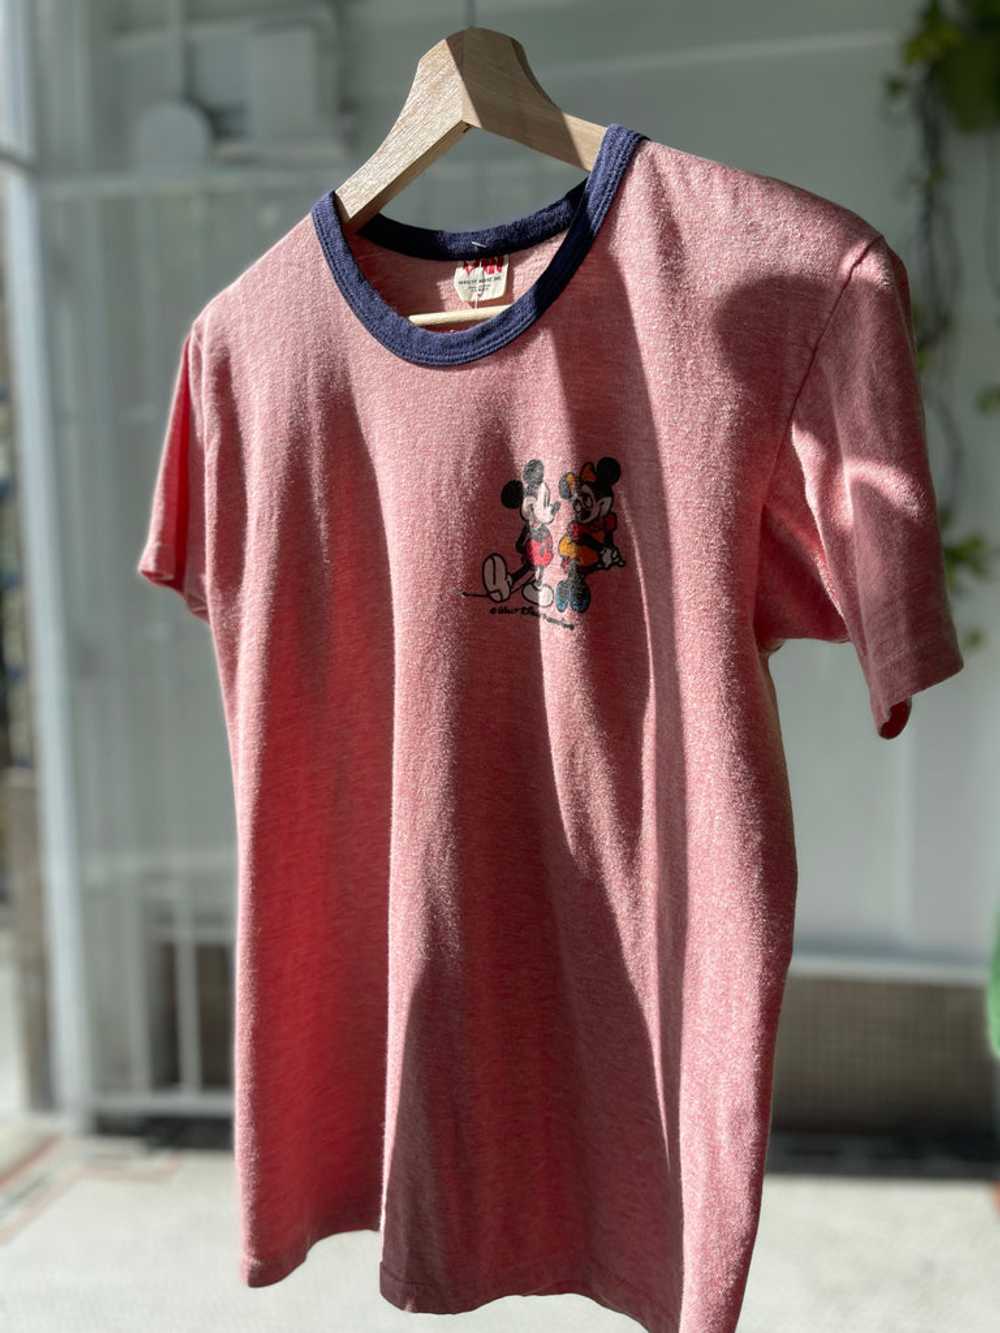 Vintage Disney ringer t shirt - image 8